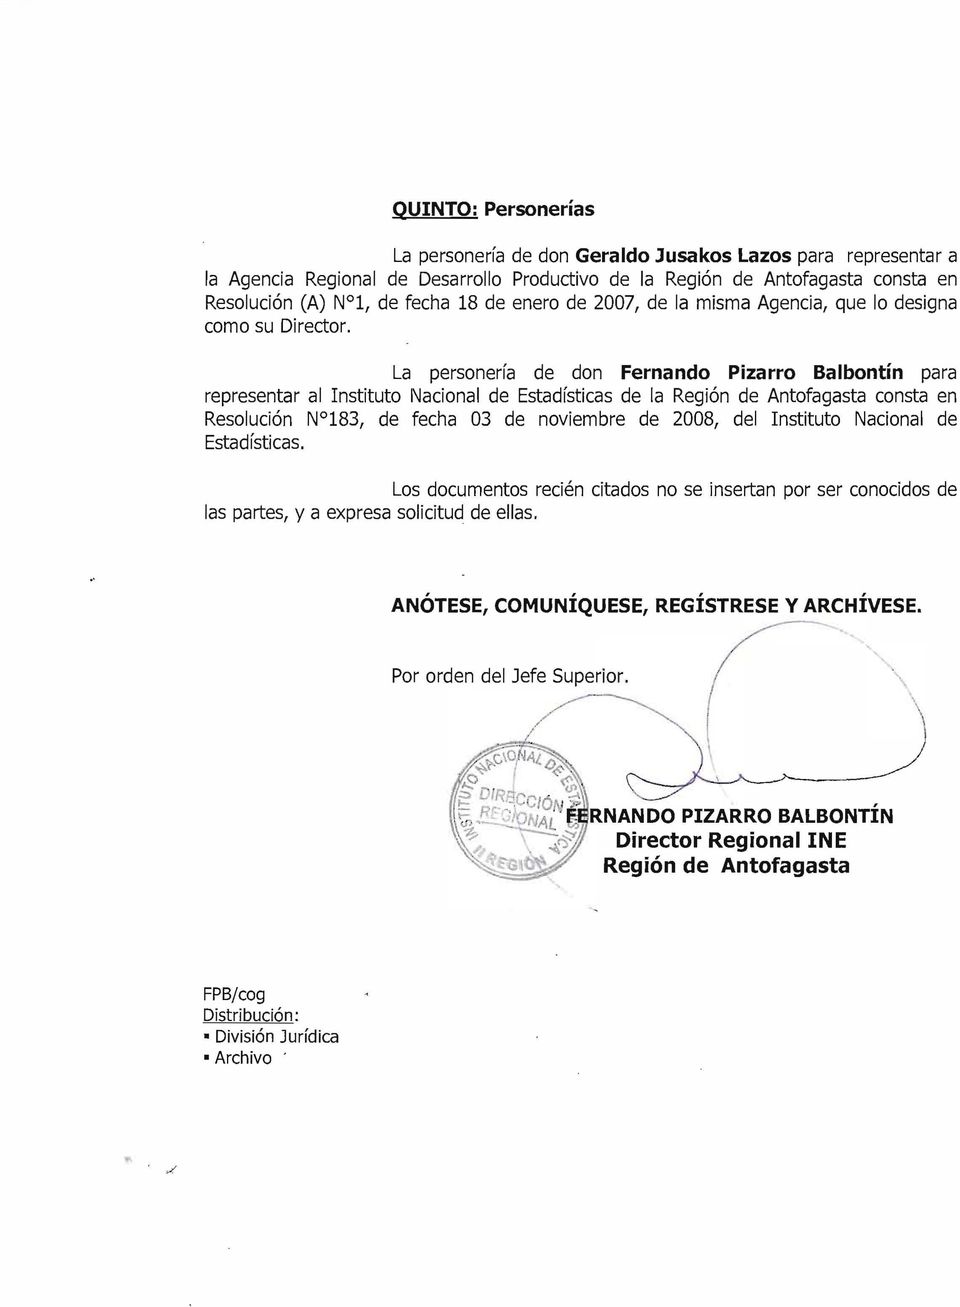 La personería de don Fernando Pizarro Balbontín para representar al Instituto Nacional de Estadísticas de la Región de Antofagasta consta en Resolución N 183, de